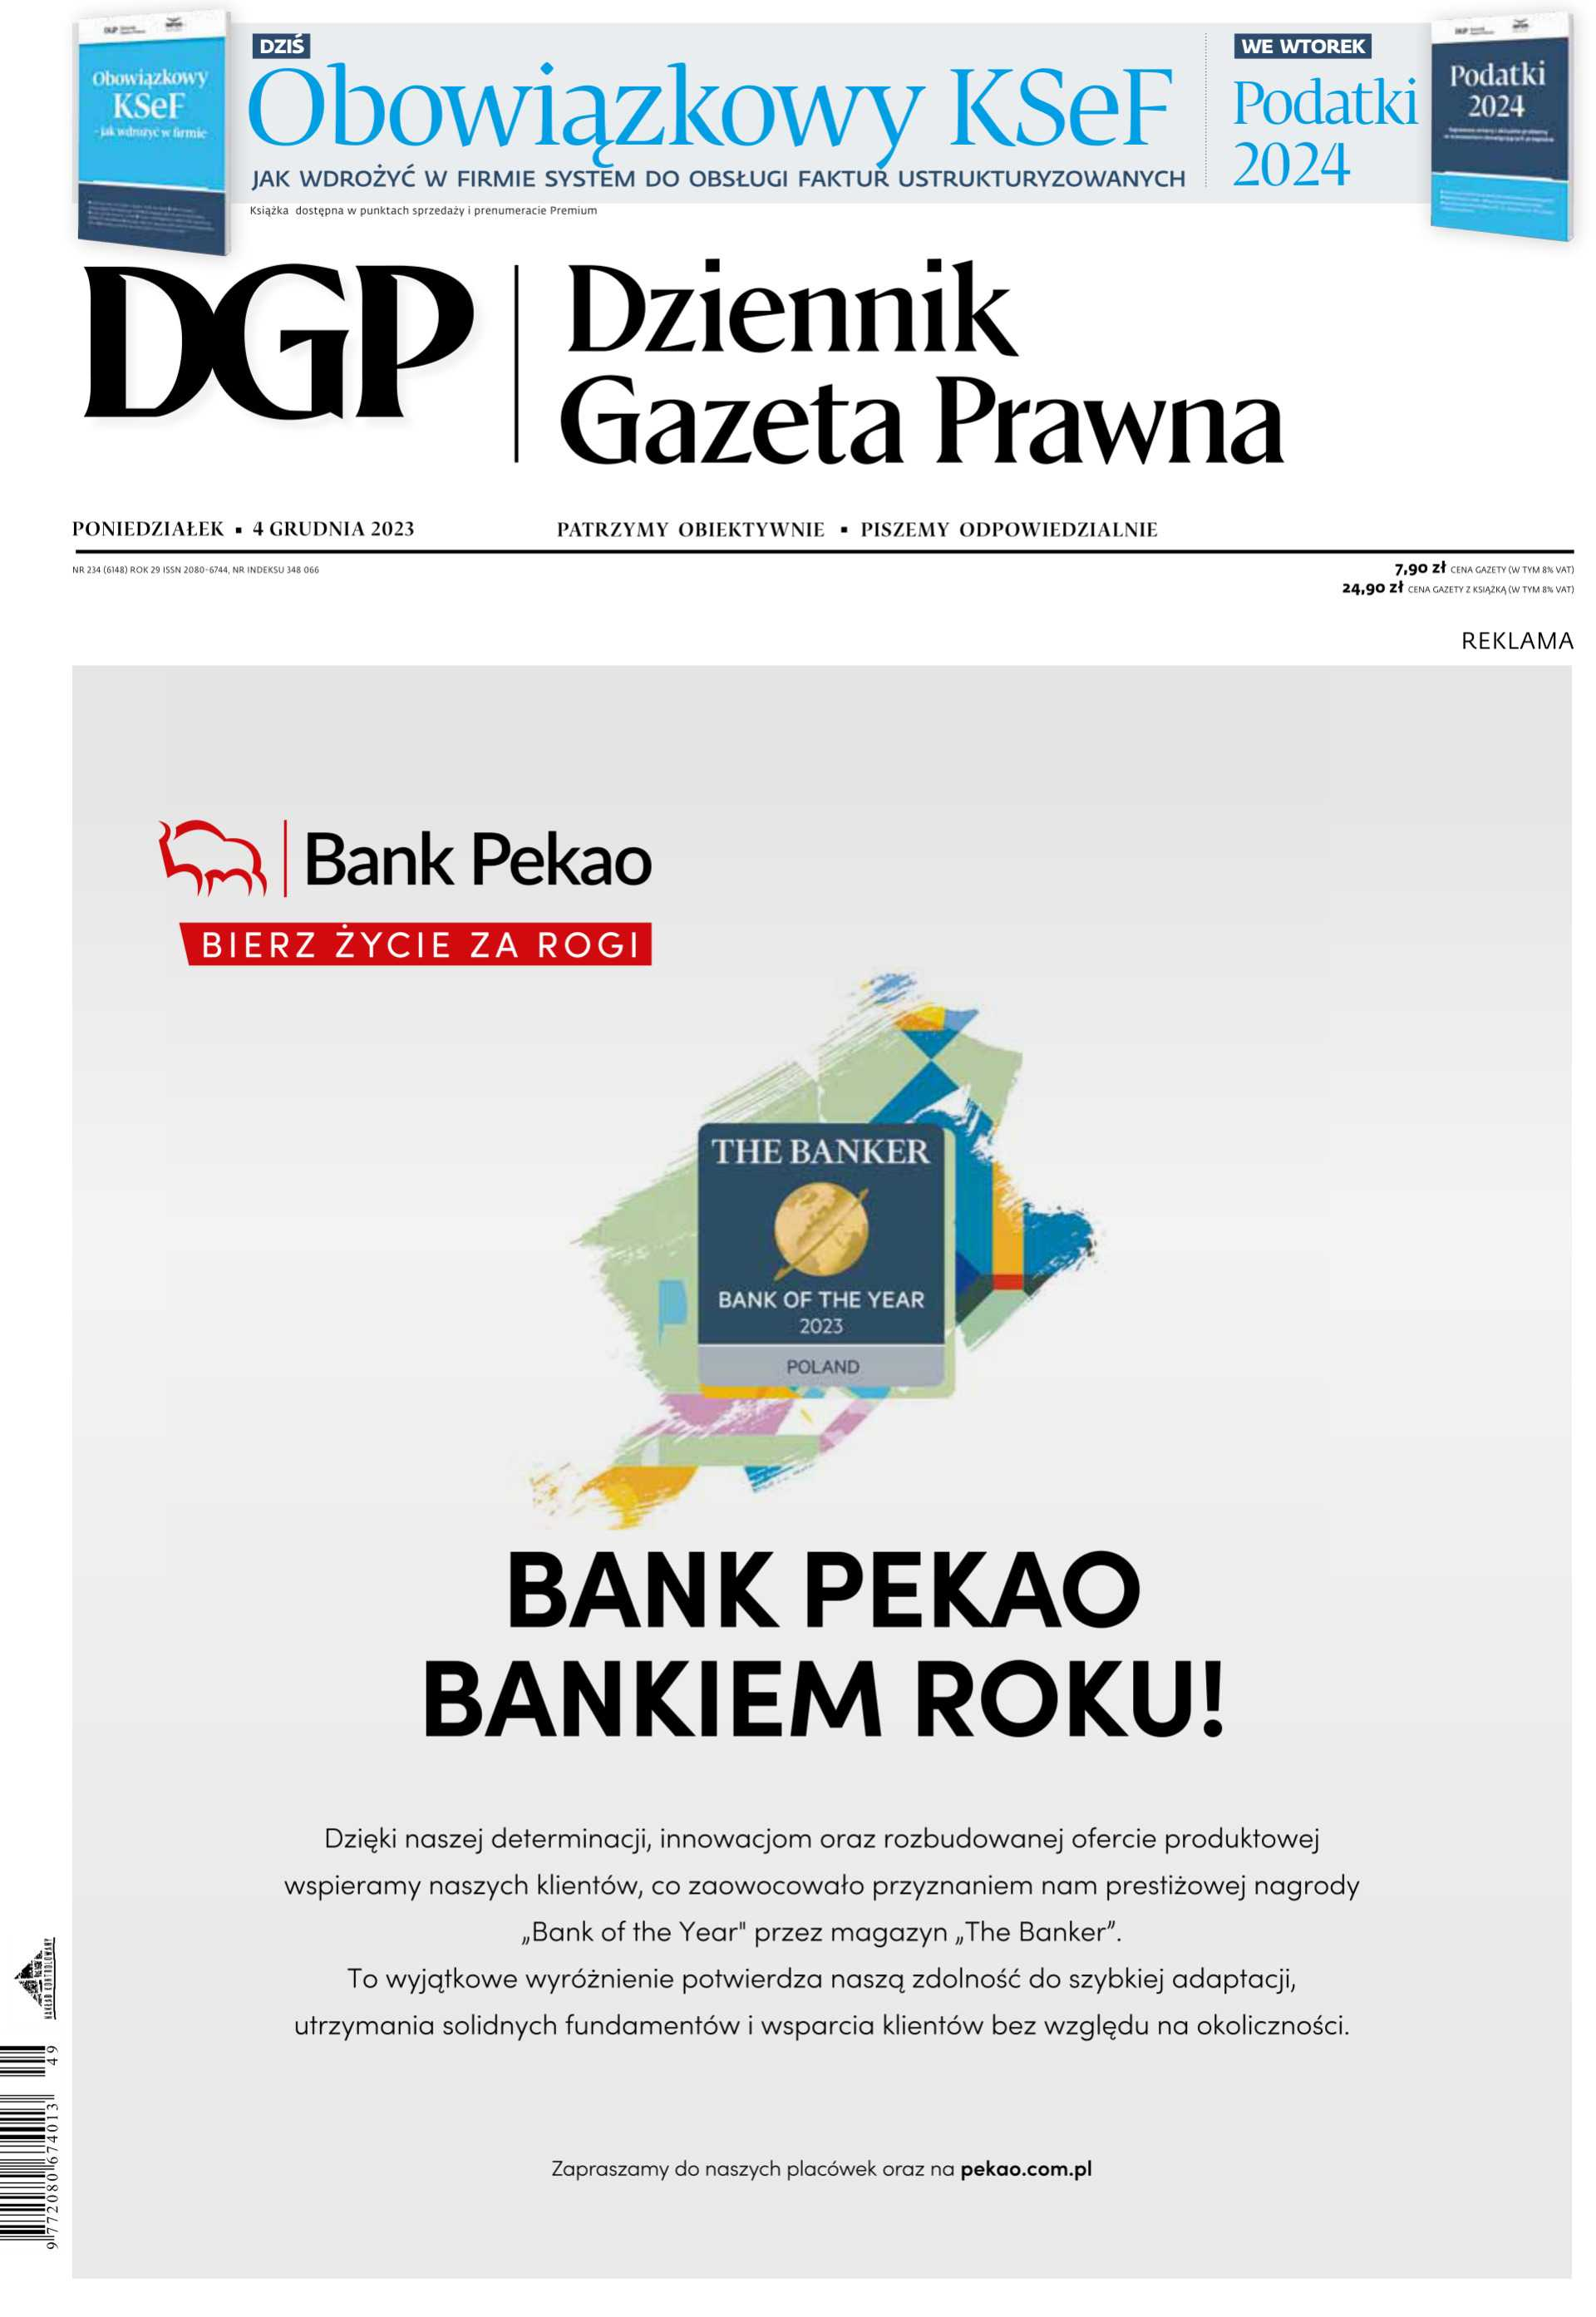 Dziennik Gazeta Prawna - owiewka_cover